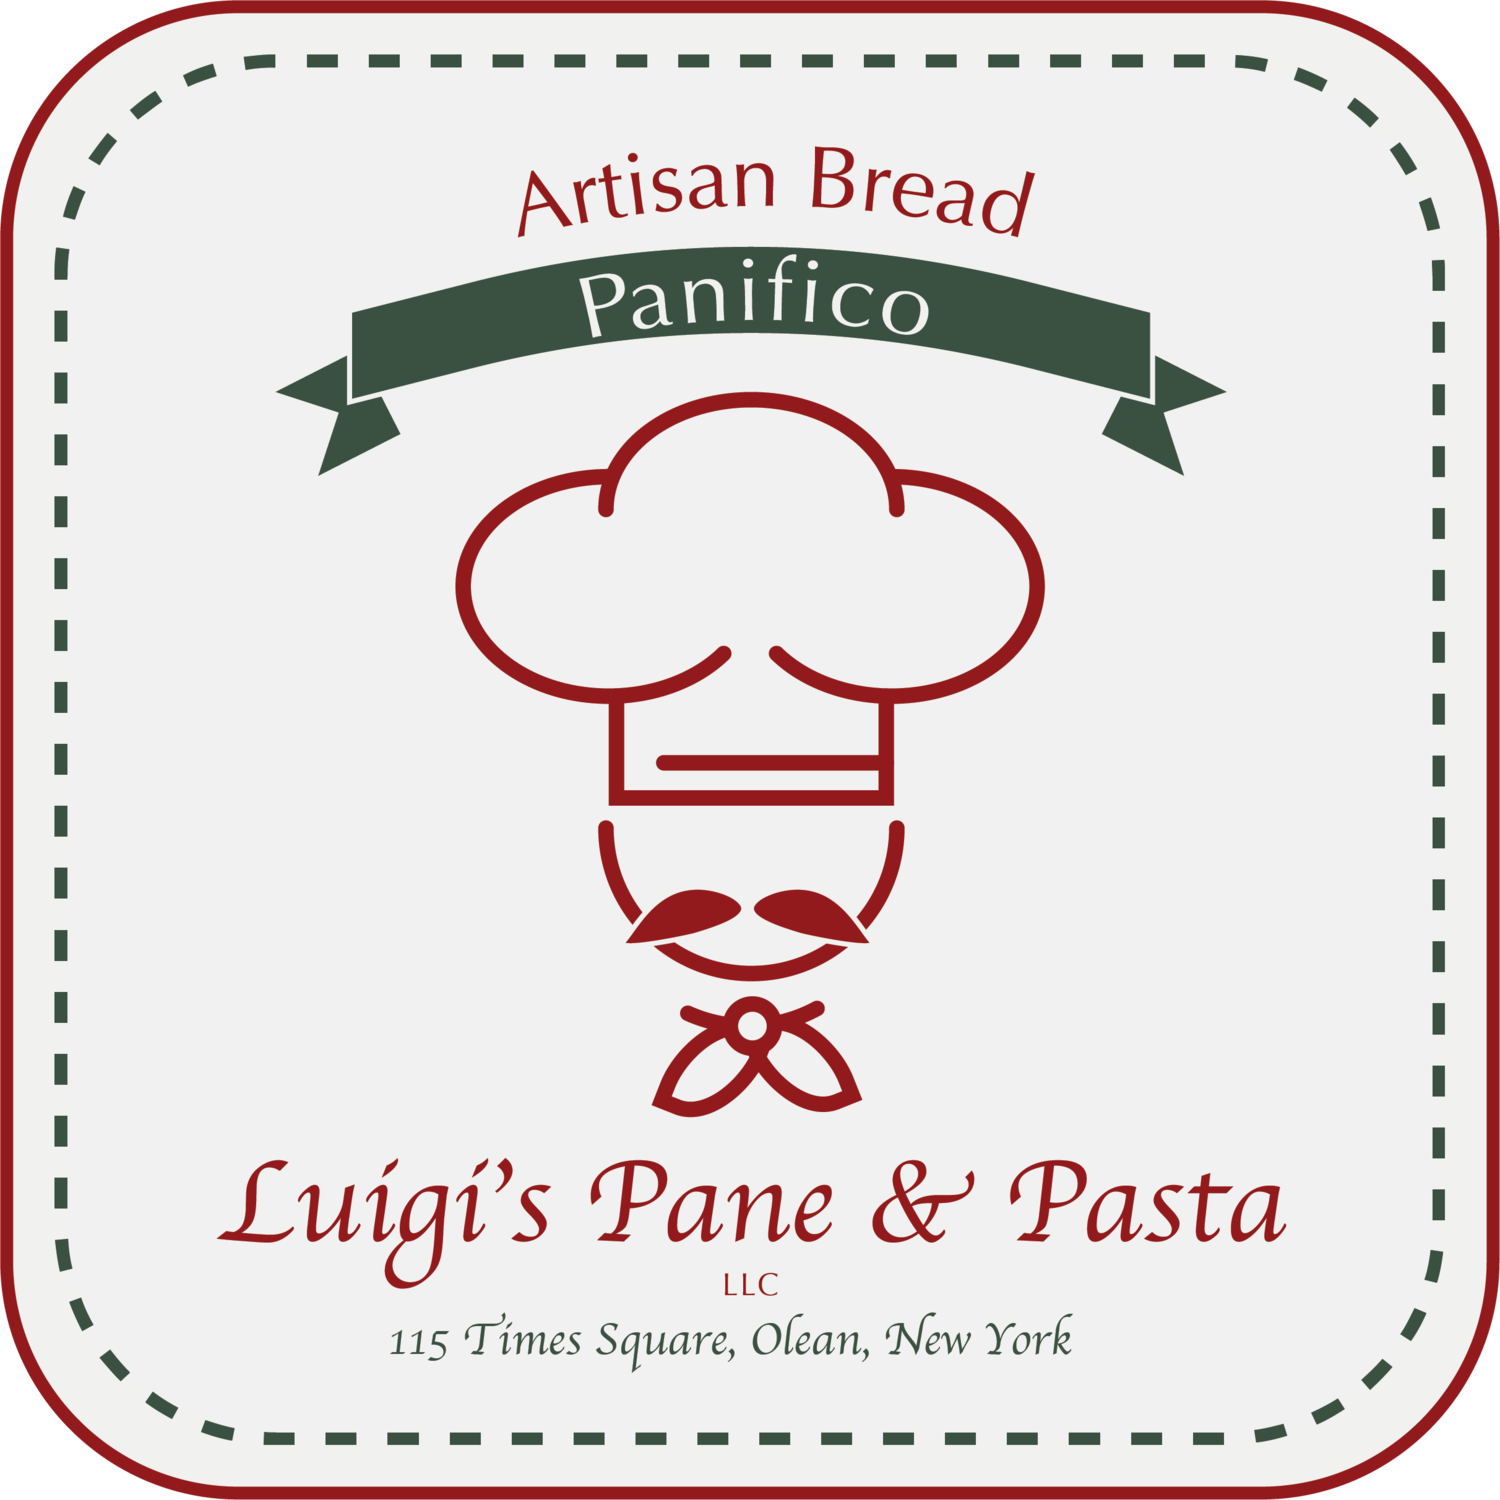 Luigi's Pane & Pasta